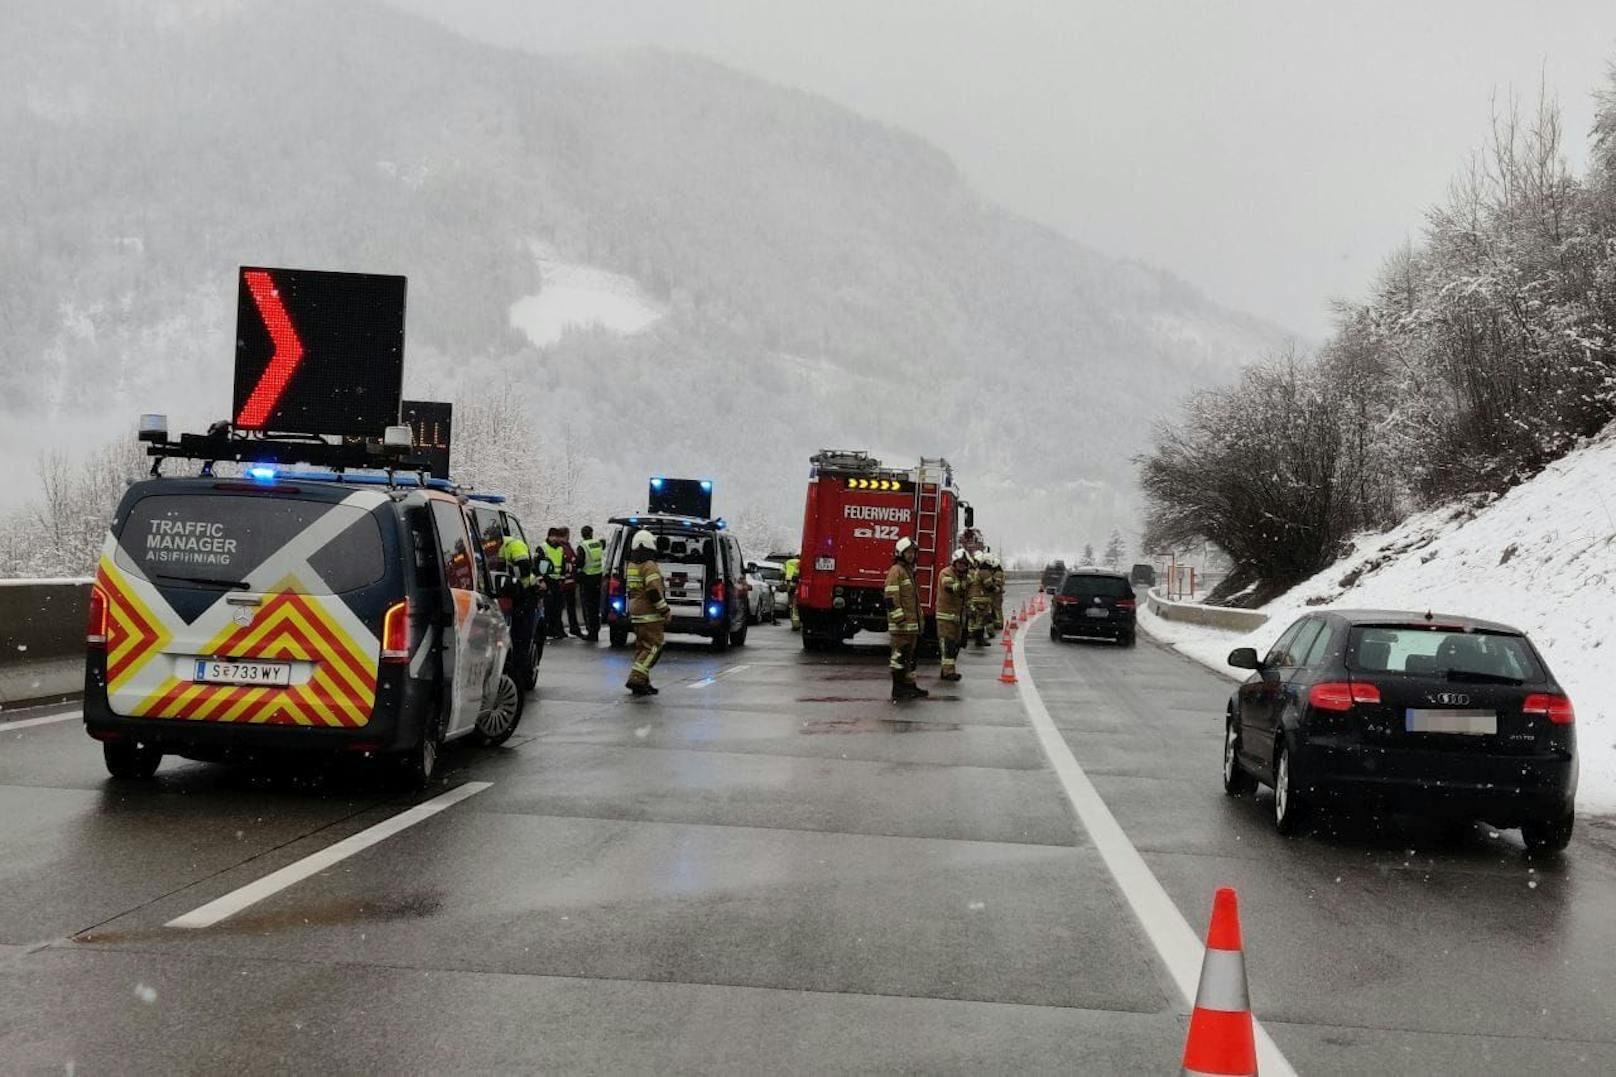 Ein schwerer Verkehrsunfall ist am Sonntag auf der A10 Tauernautobahn im Gemeindegebiet von Pfarrwerfen (S) passiert. Ein 14-Jähriger wurde verletzt.